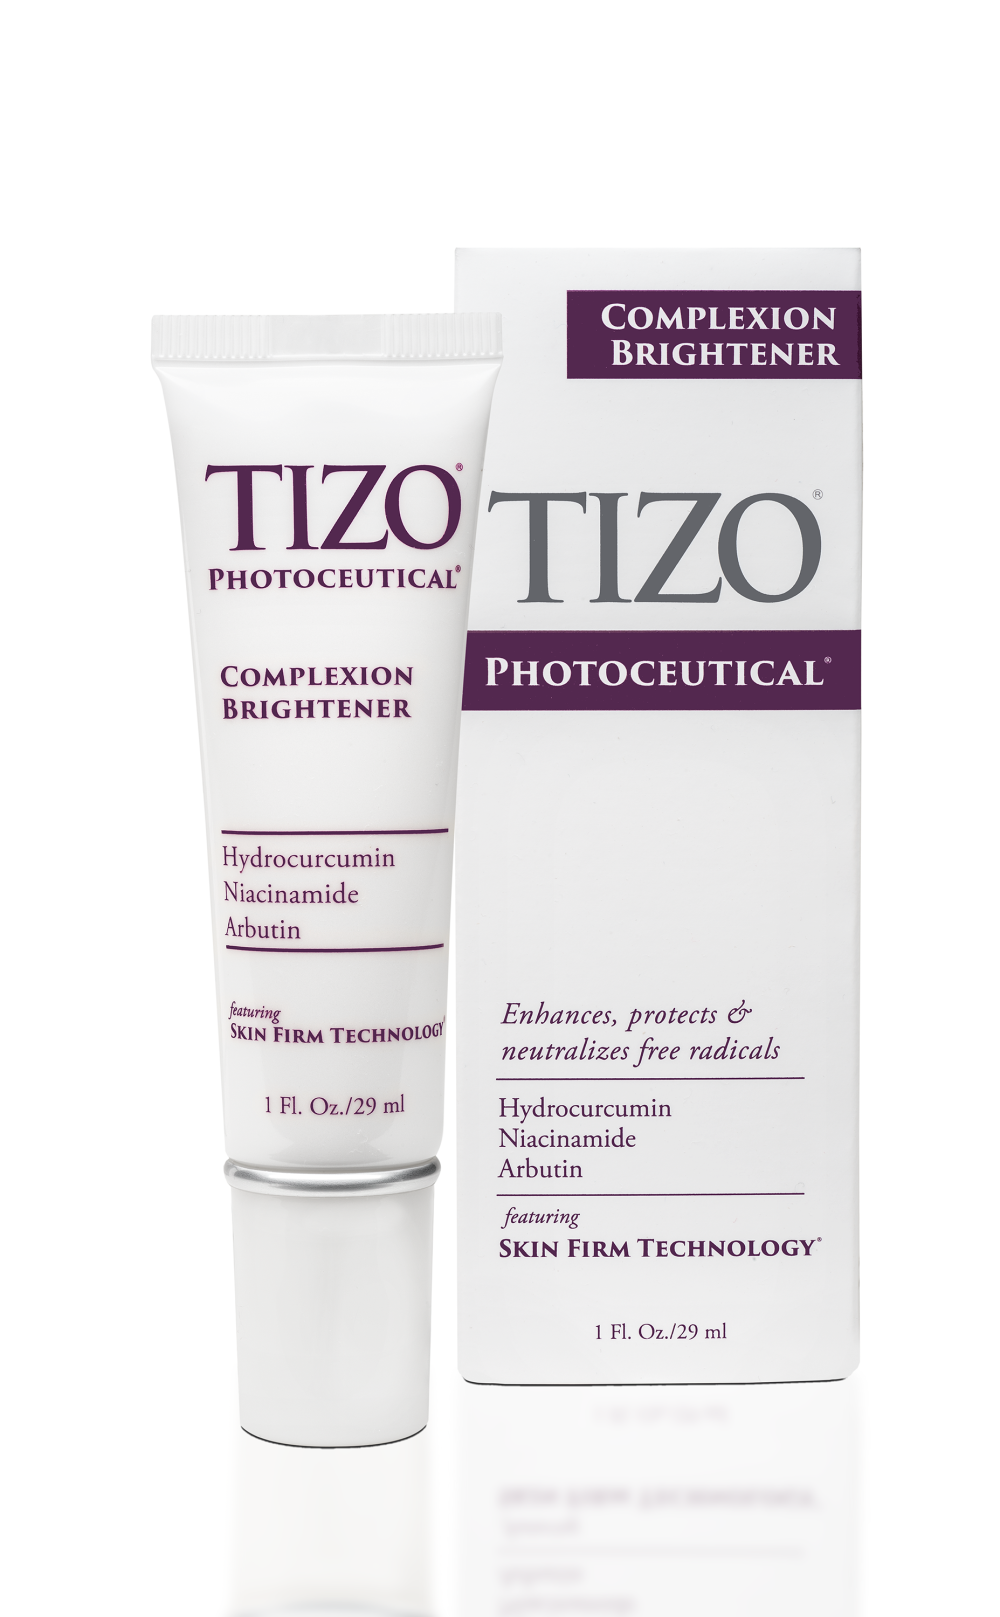 Крем увлажняющий, выравнивающий цвет лица TiZO Photoceutical Complexion Brightener 29 мл